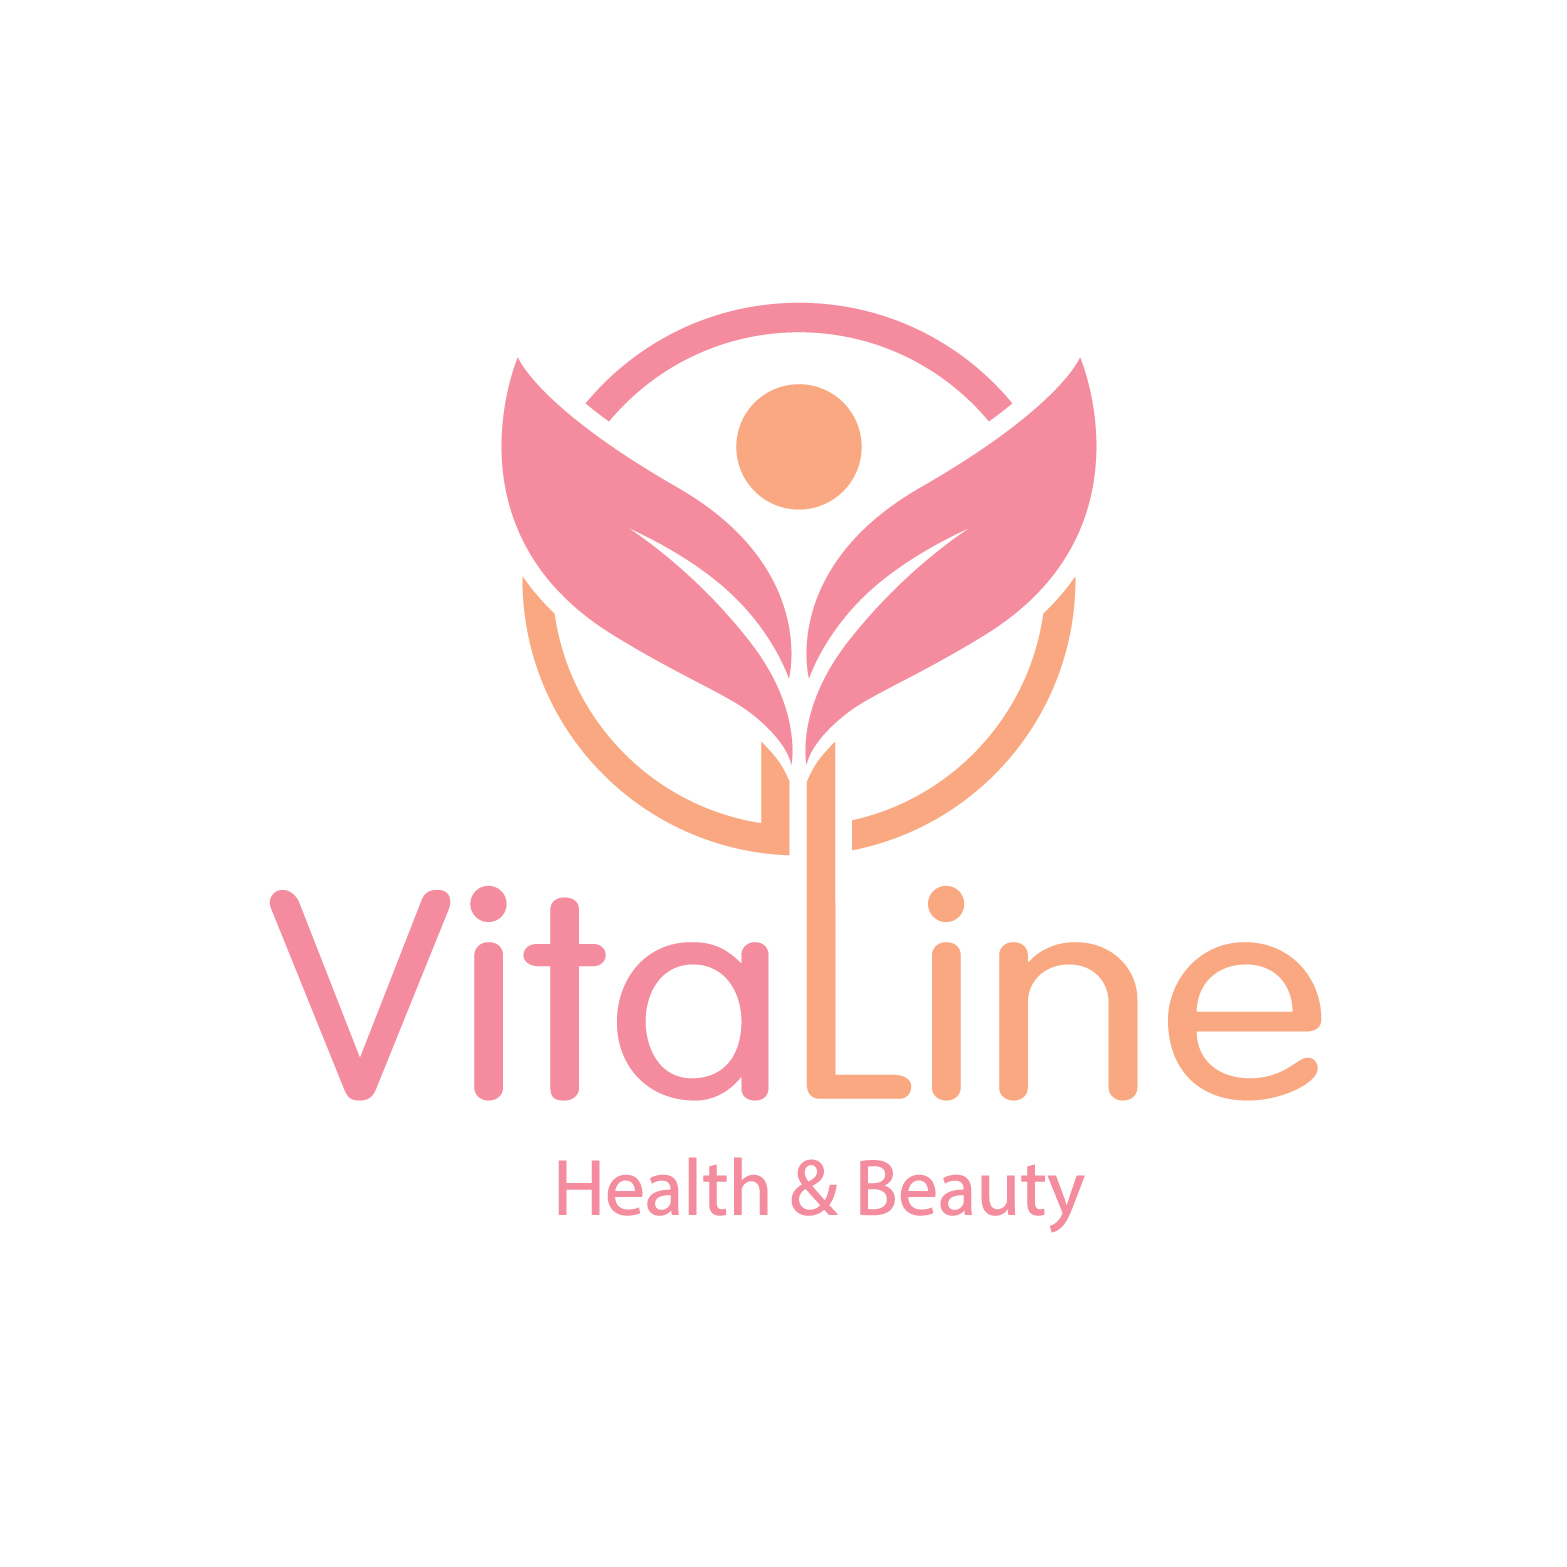 ВитаЛайн (VitaLine), лечебно-диагностический центр